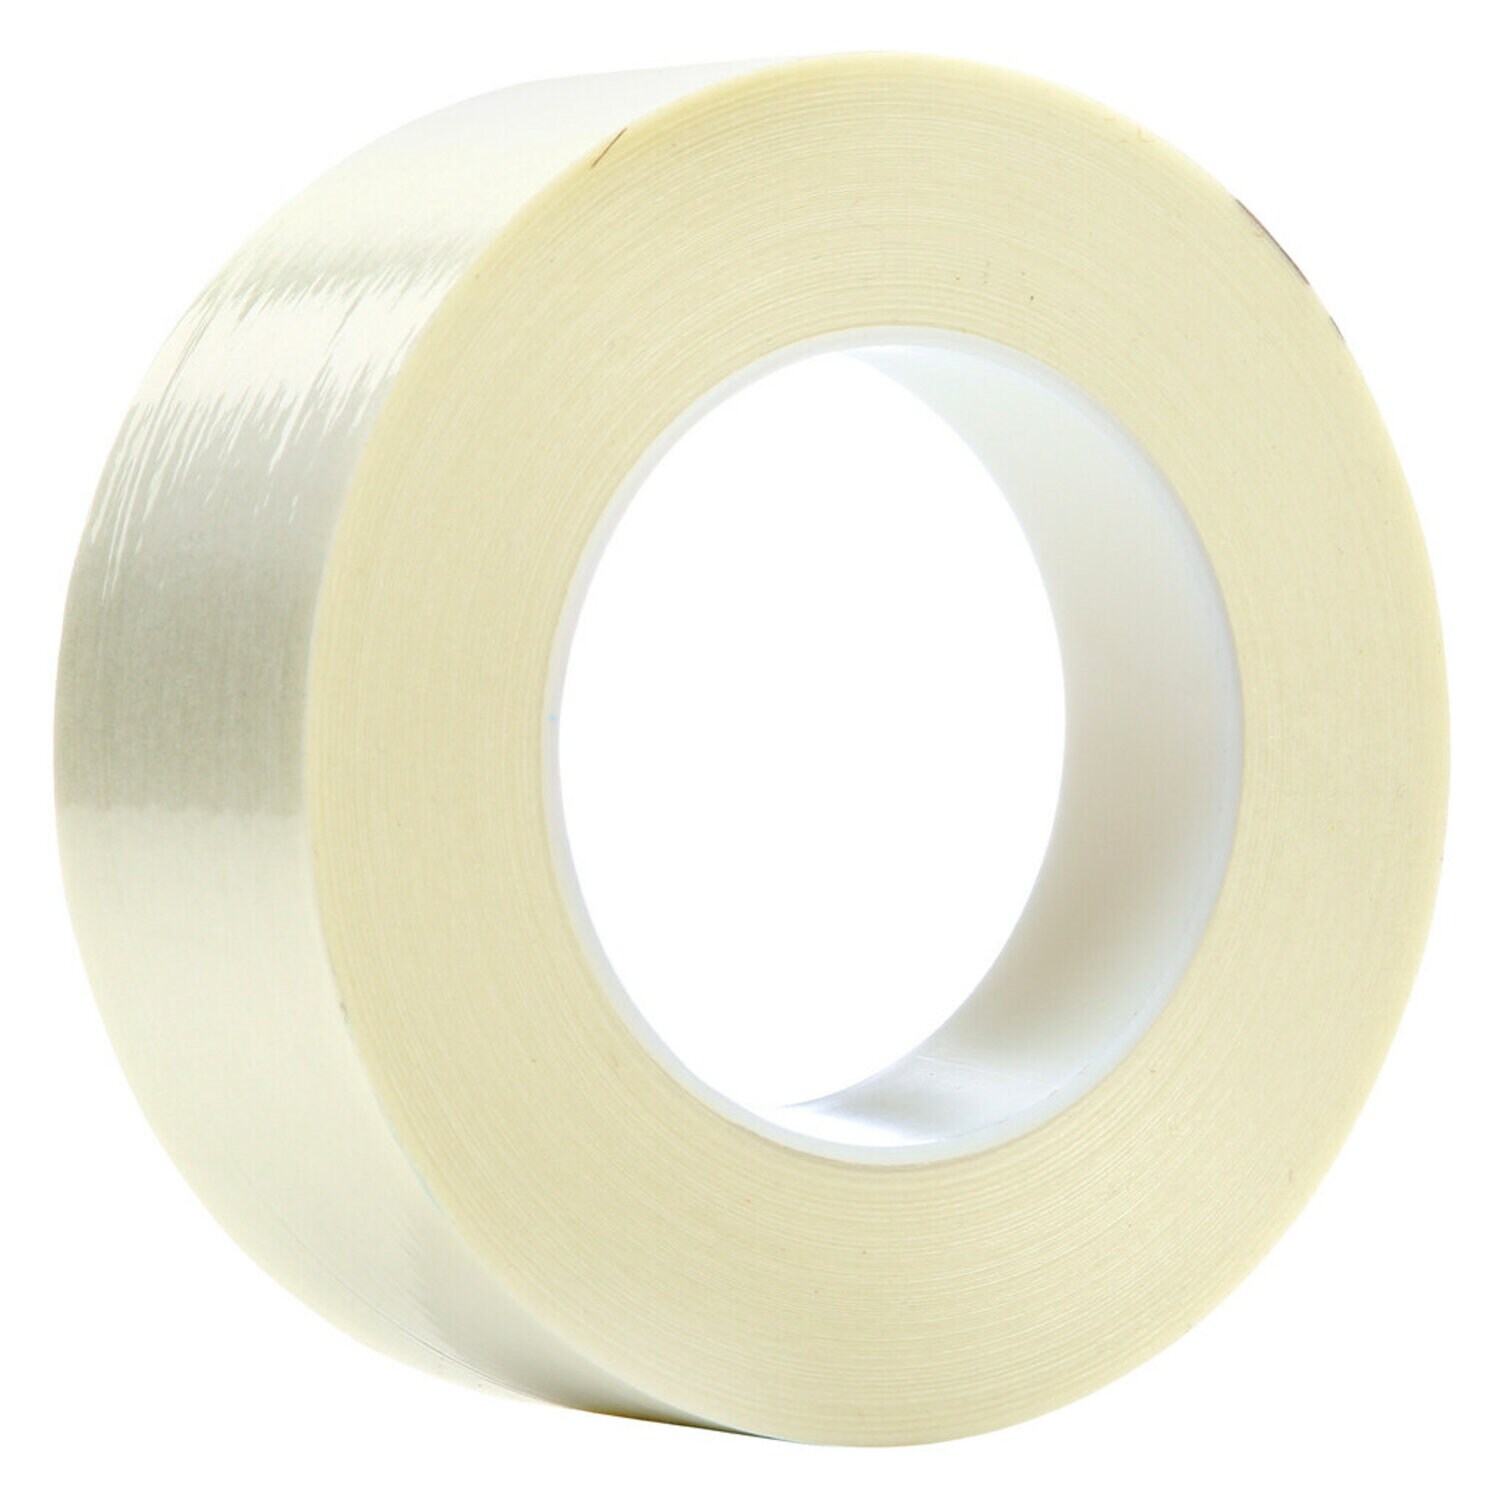 7000136909 - Scotch Filament Tape 898, Clear, 48 mm x 55 m, 6.6 mil, 24 rolls per
case, Plastic Core